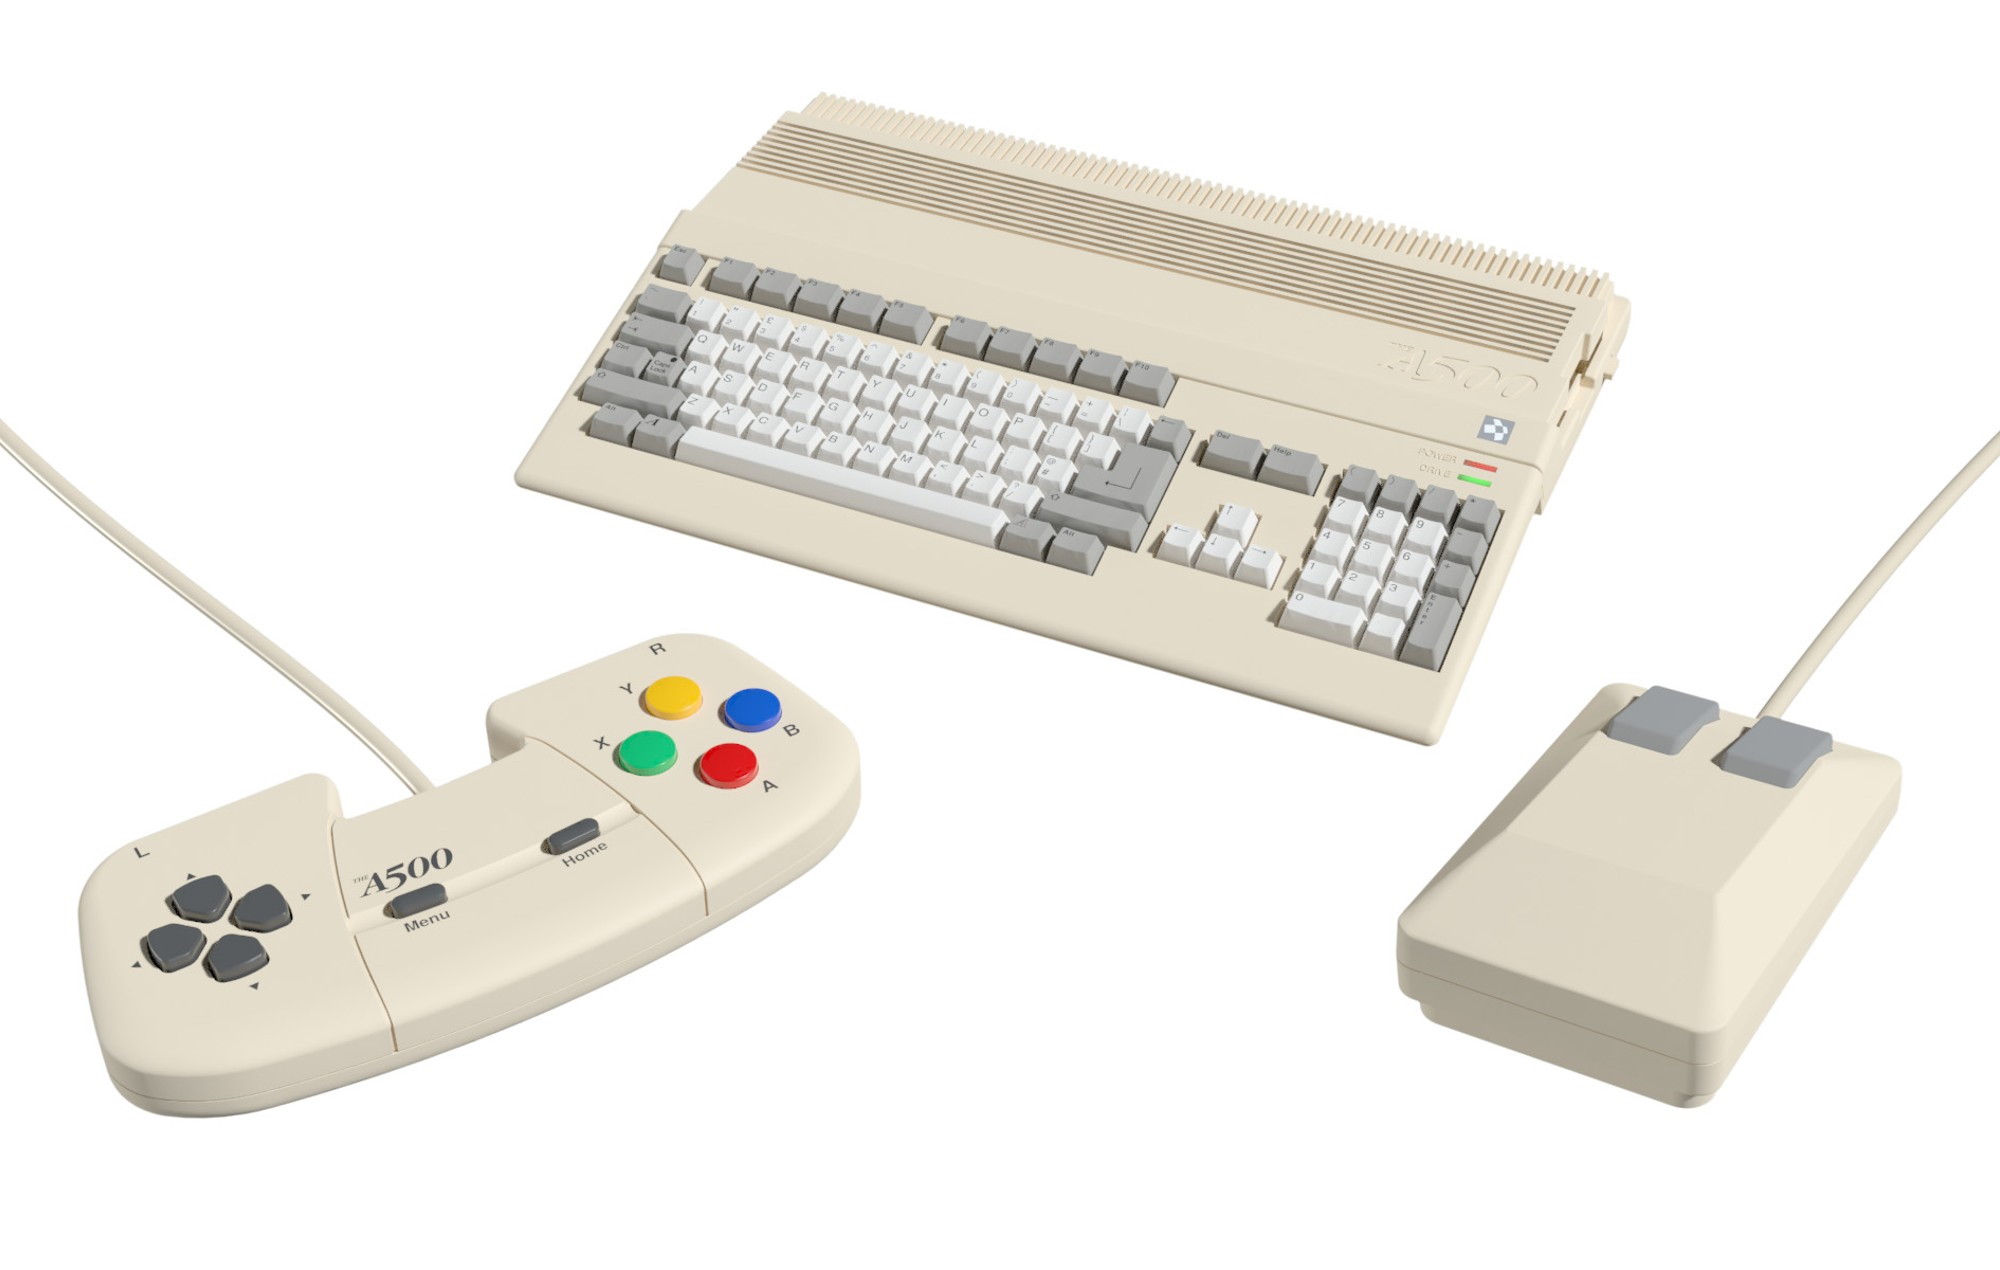 La version miniaturisée de l’Amiga 500. © Retro Games Ltd